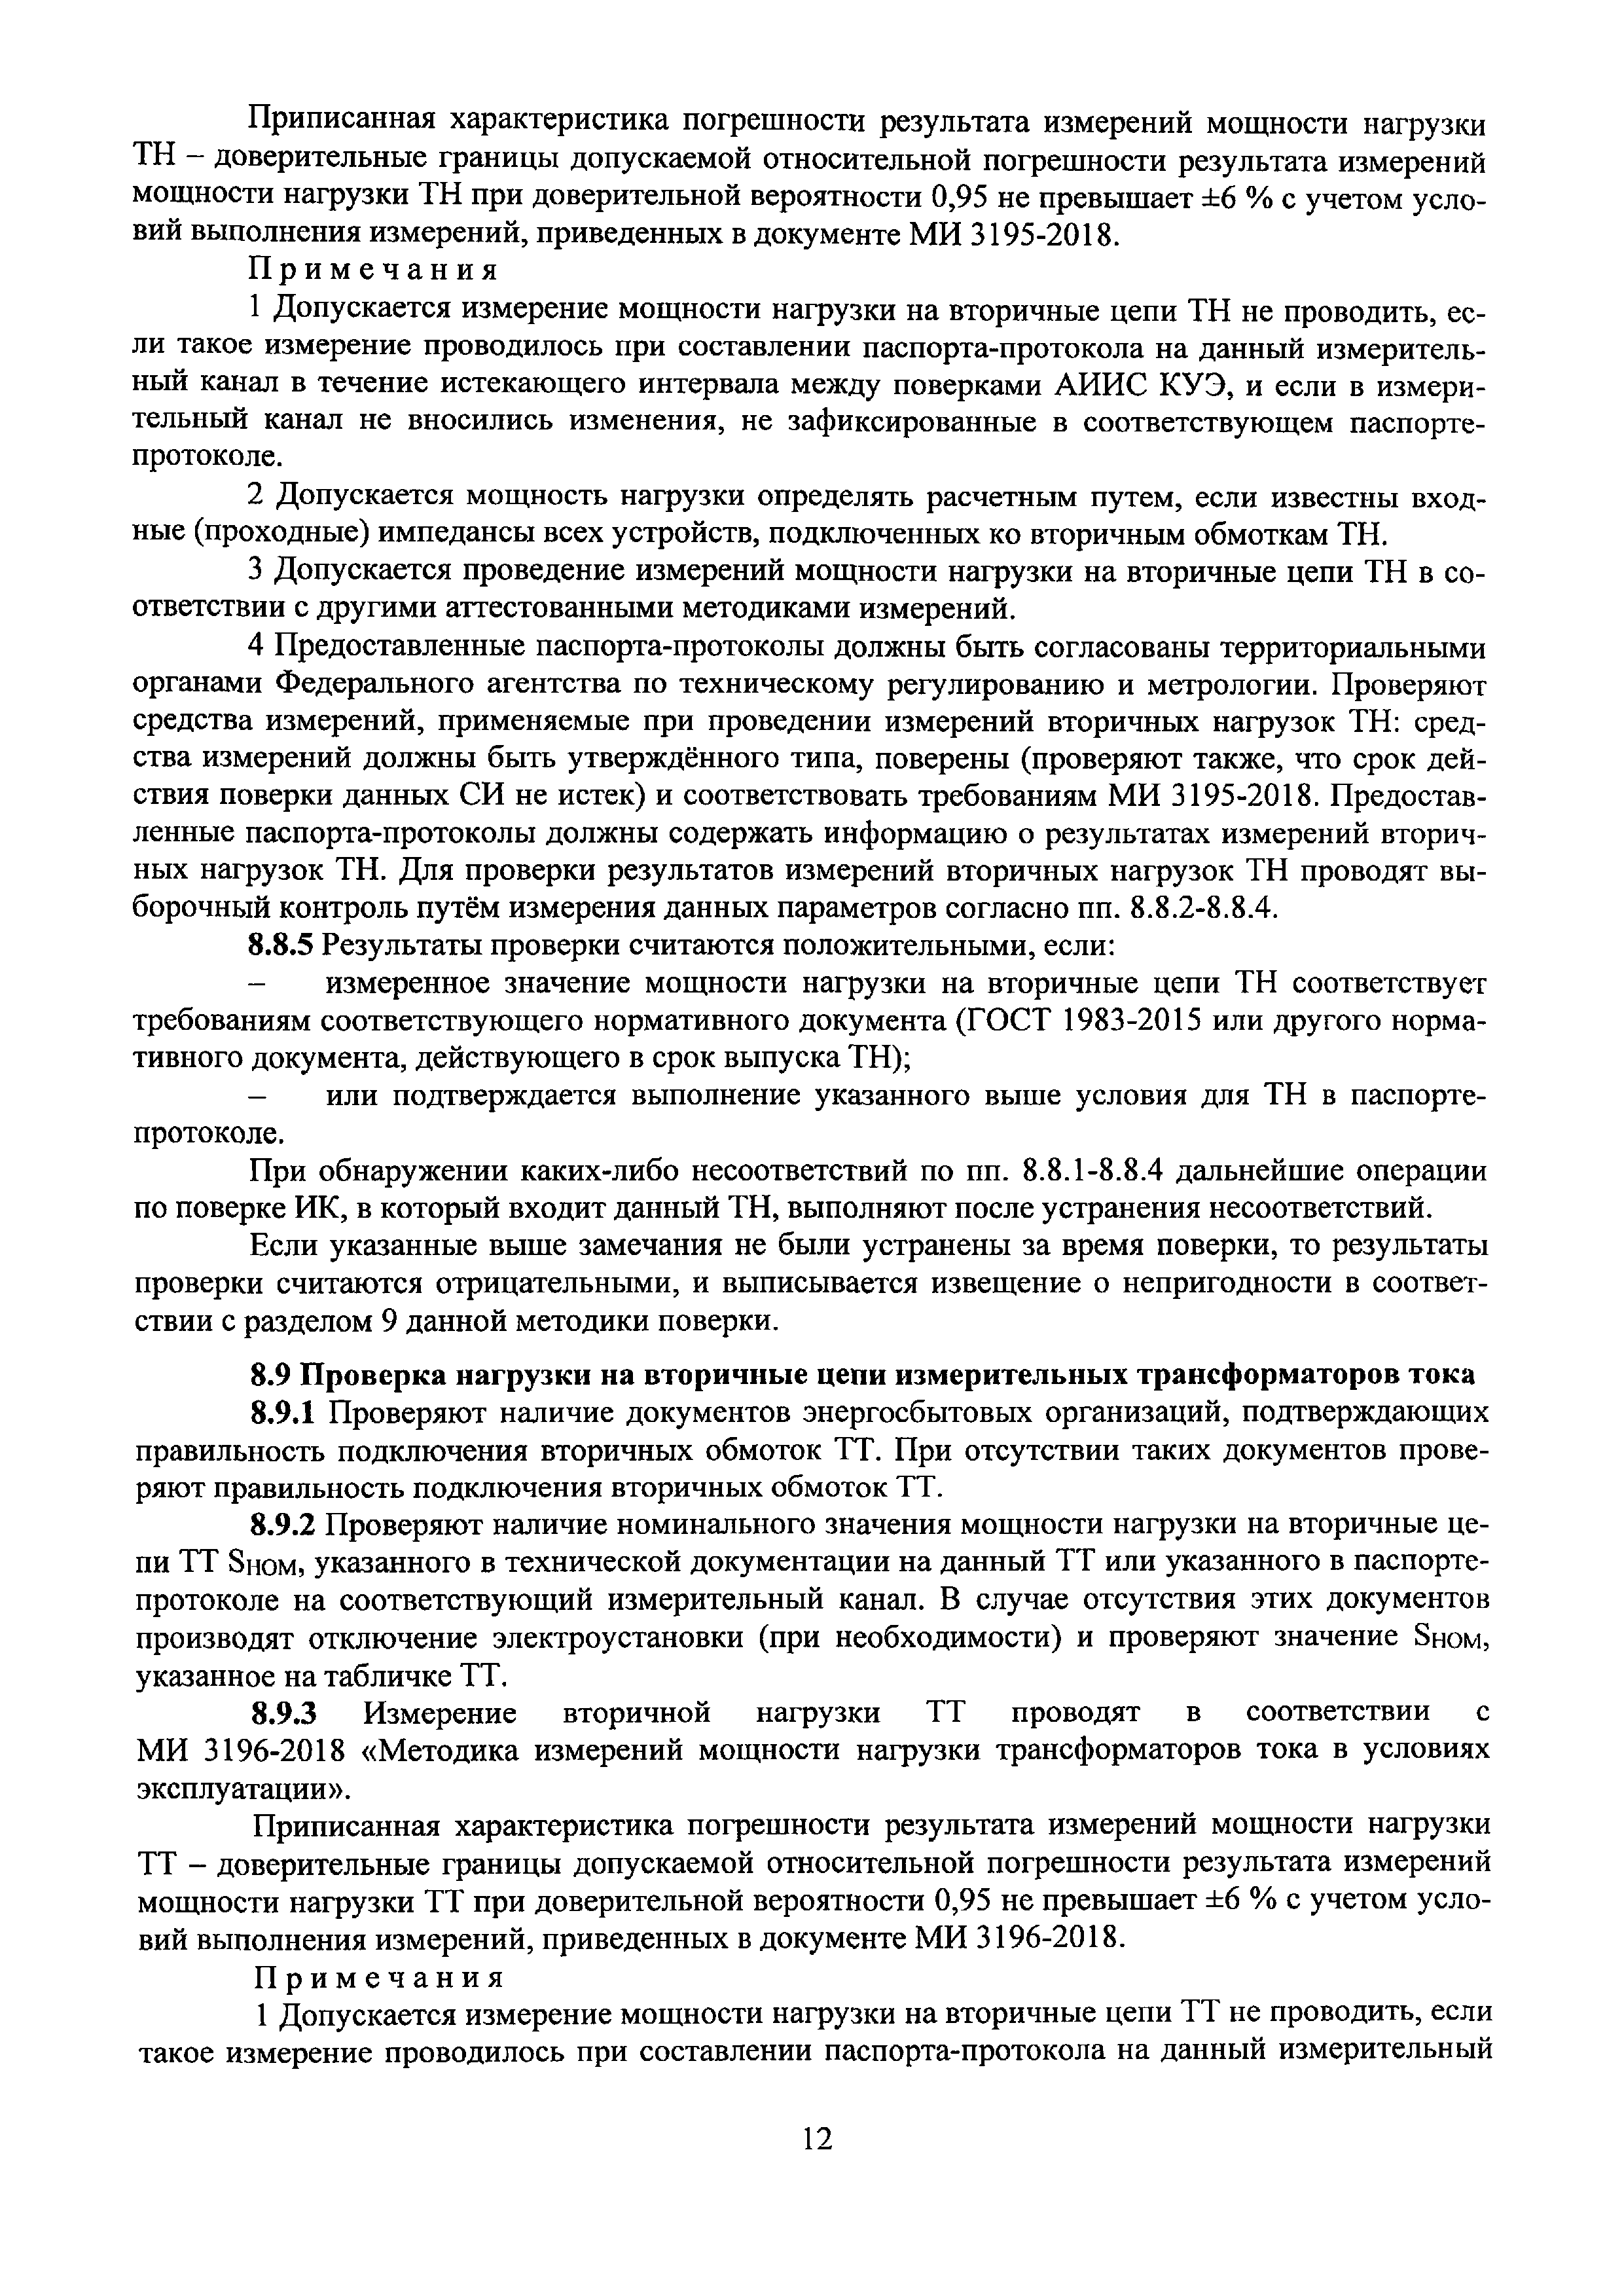 МП ЭПР-217-2019